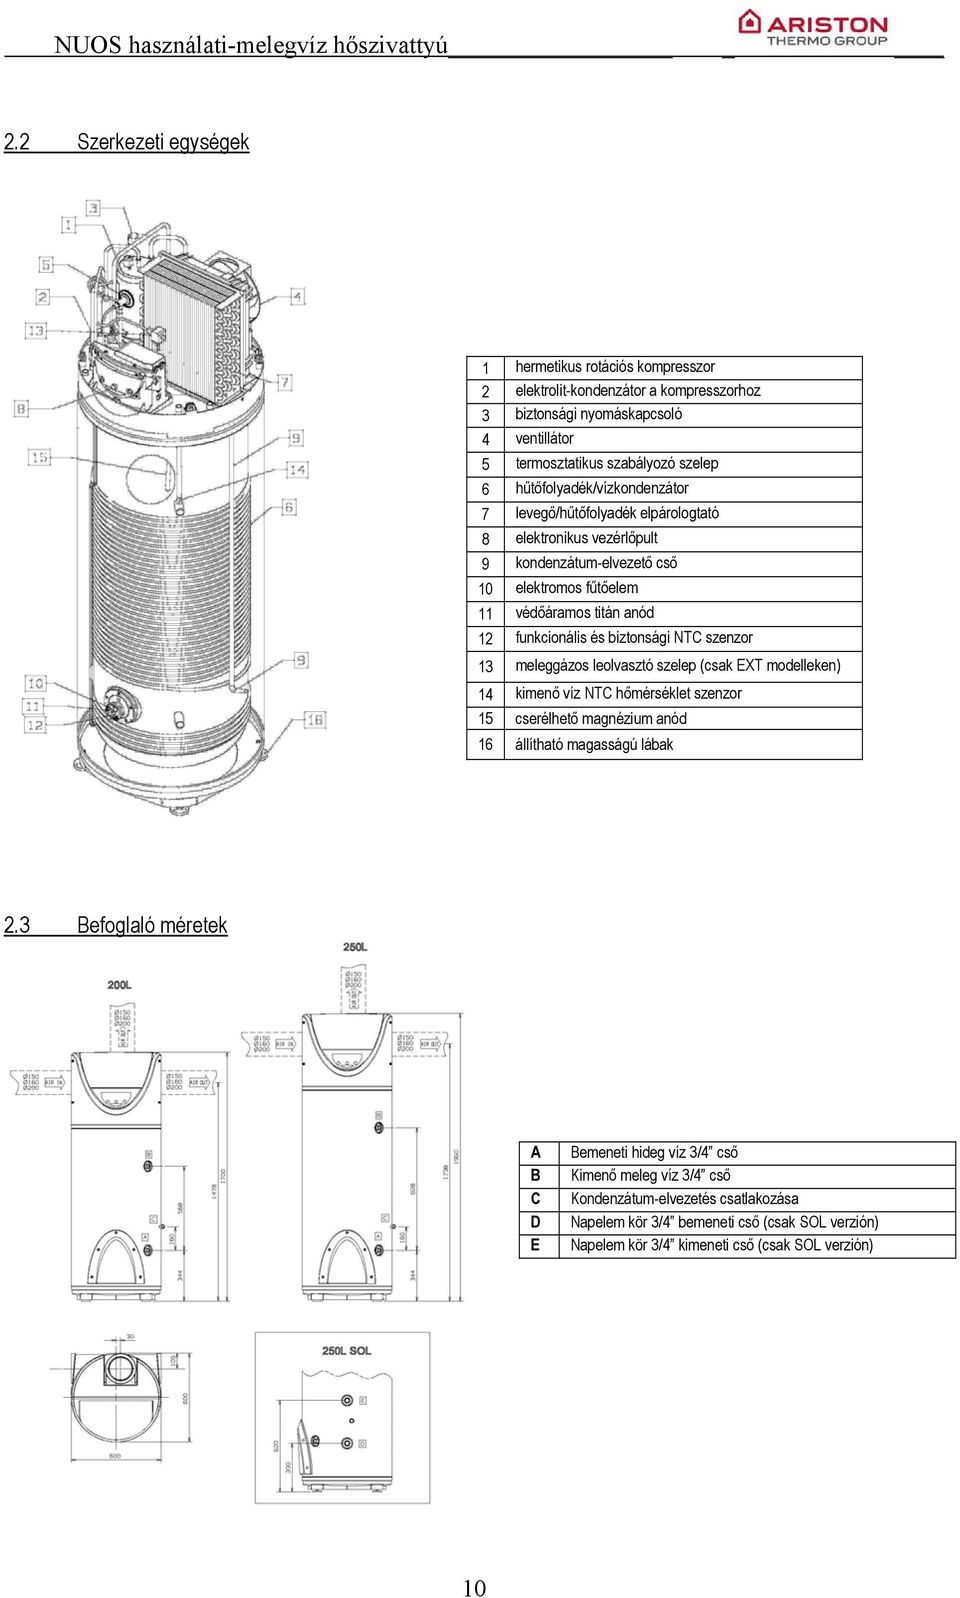 biztonsági NTC szenzor 13 meleggázos leolvasztó szelep (csak EXT modelleken) 14 kimenő víz NTC hőmérséklet szenzor 15 cserélhető magnézium anód 16 állítható magasságú lábak 2.